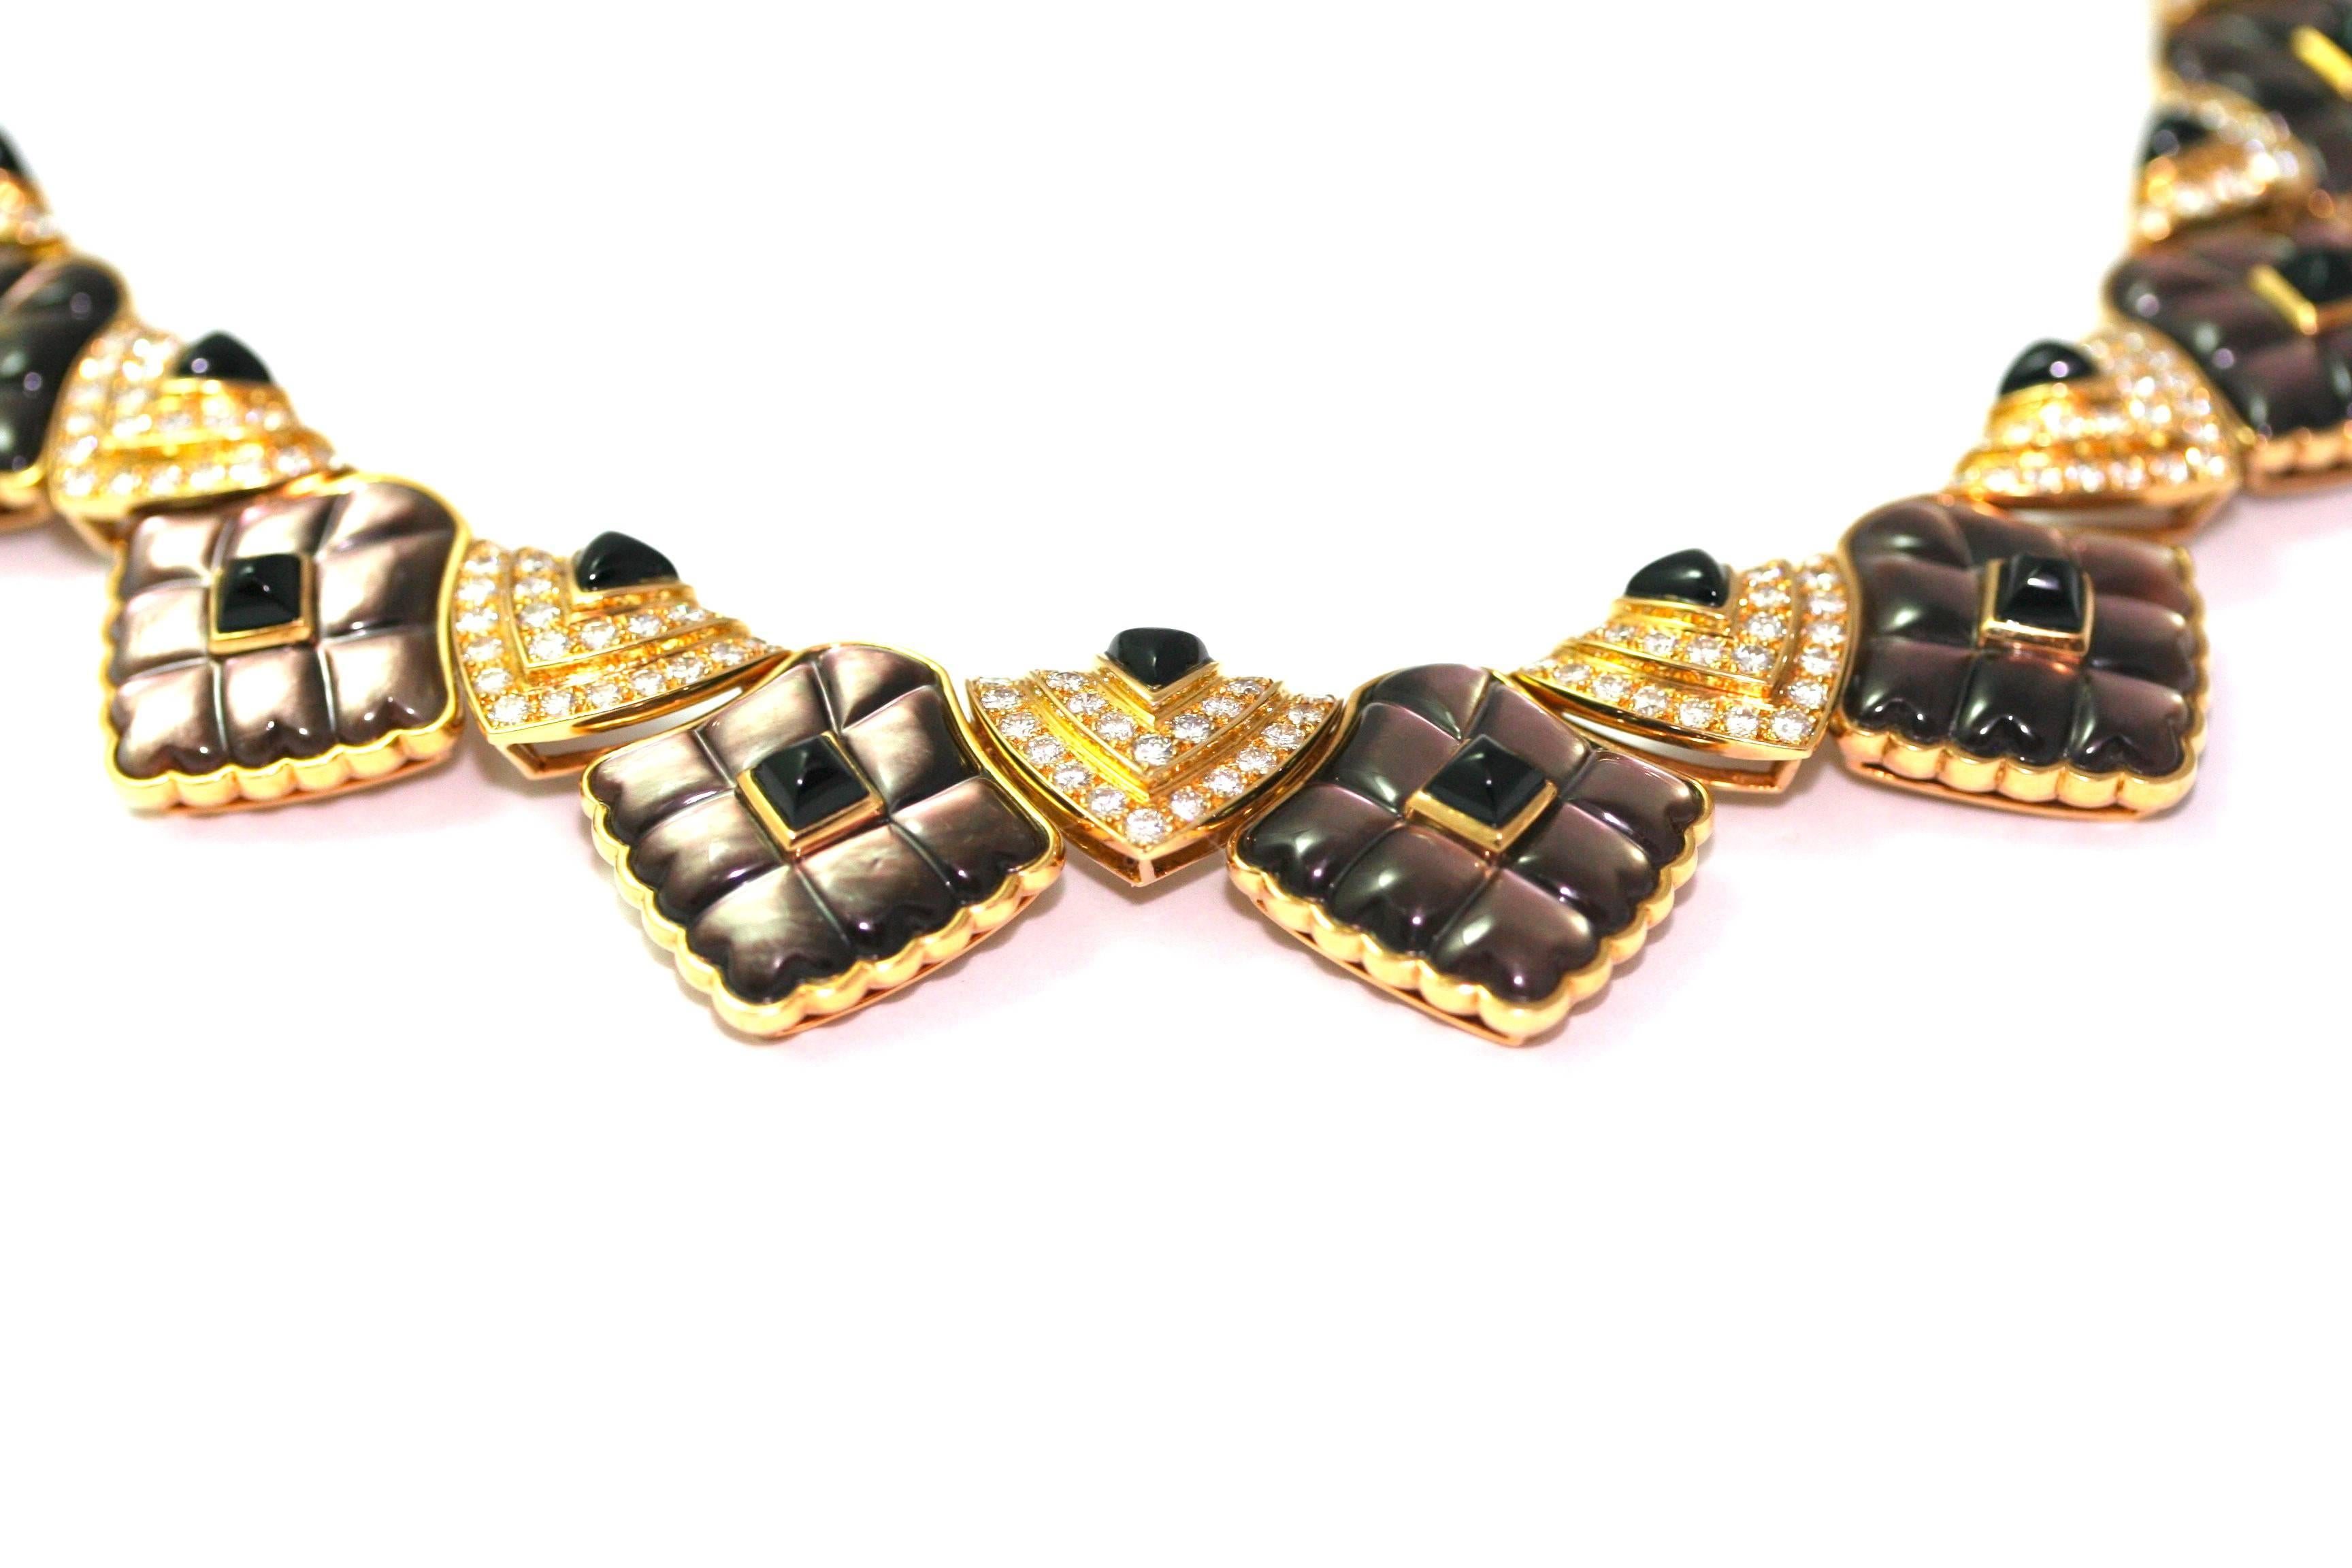 Rare collier Mauboussin réalisé dans les années 70-80. 
Ce collier est composé de différentes formes géométriques.
14 motifs triangulaires sertis de diamants et d'onyx en pain de sucre, les 5 motifs centraux sont plus grands, avec deux rangées de